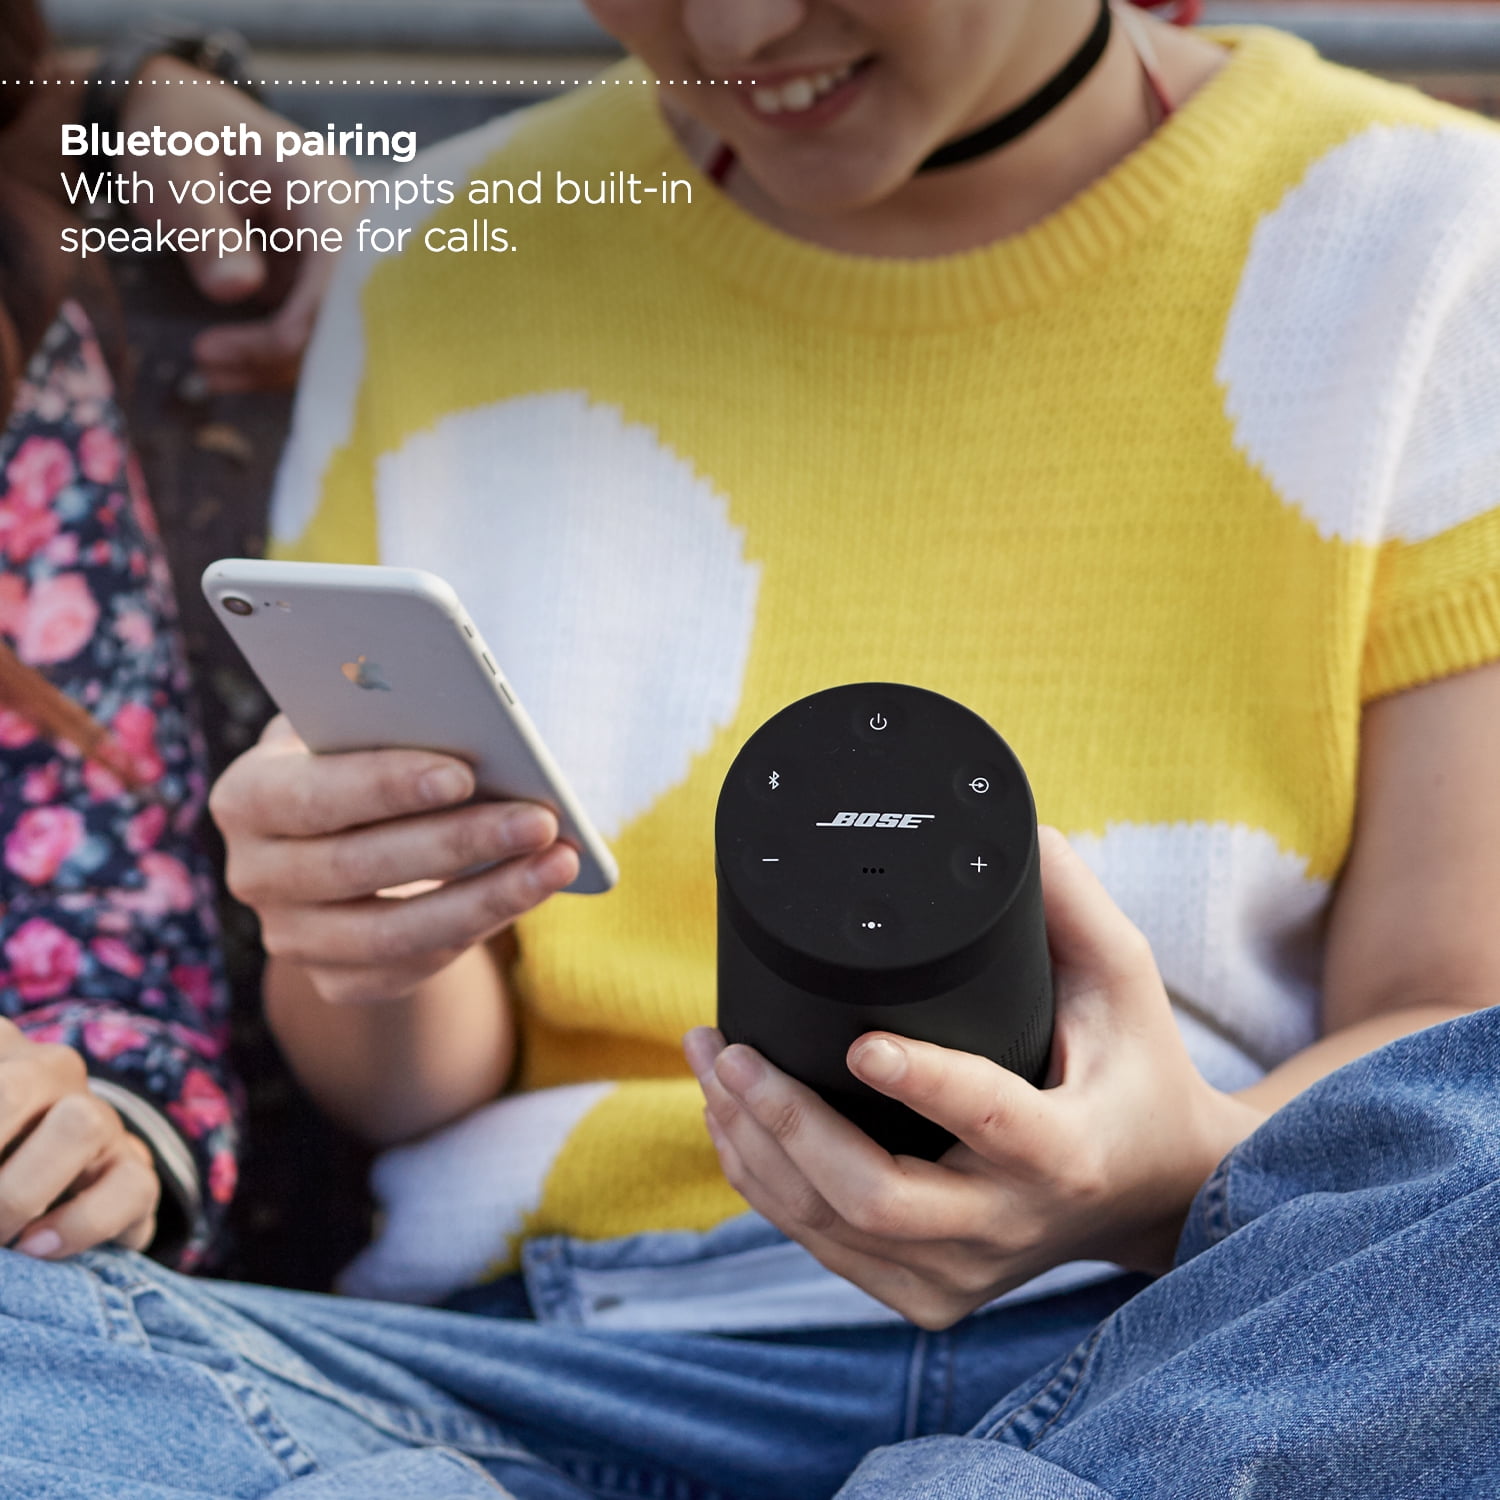 Bose Soundlink Revolve II Bluetooth Speaker - Black